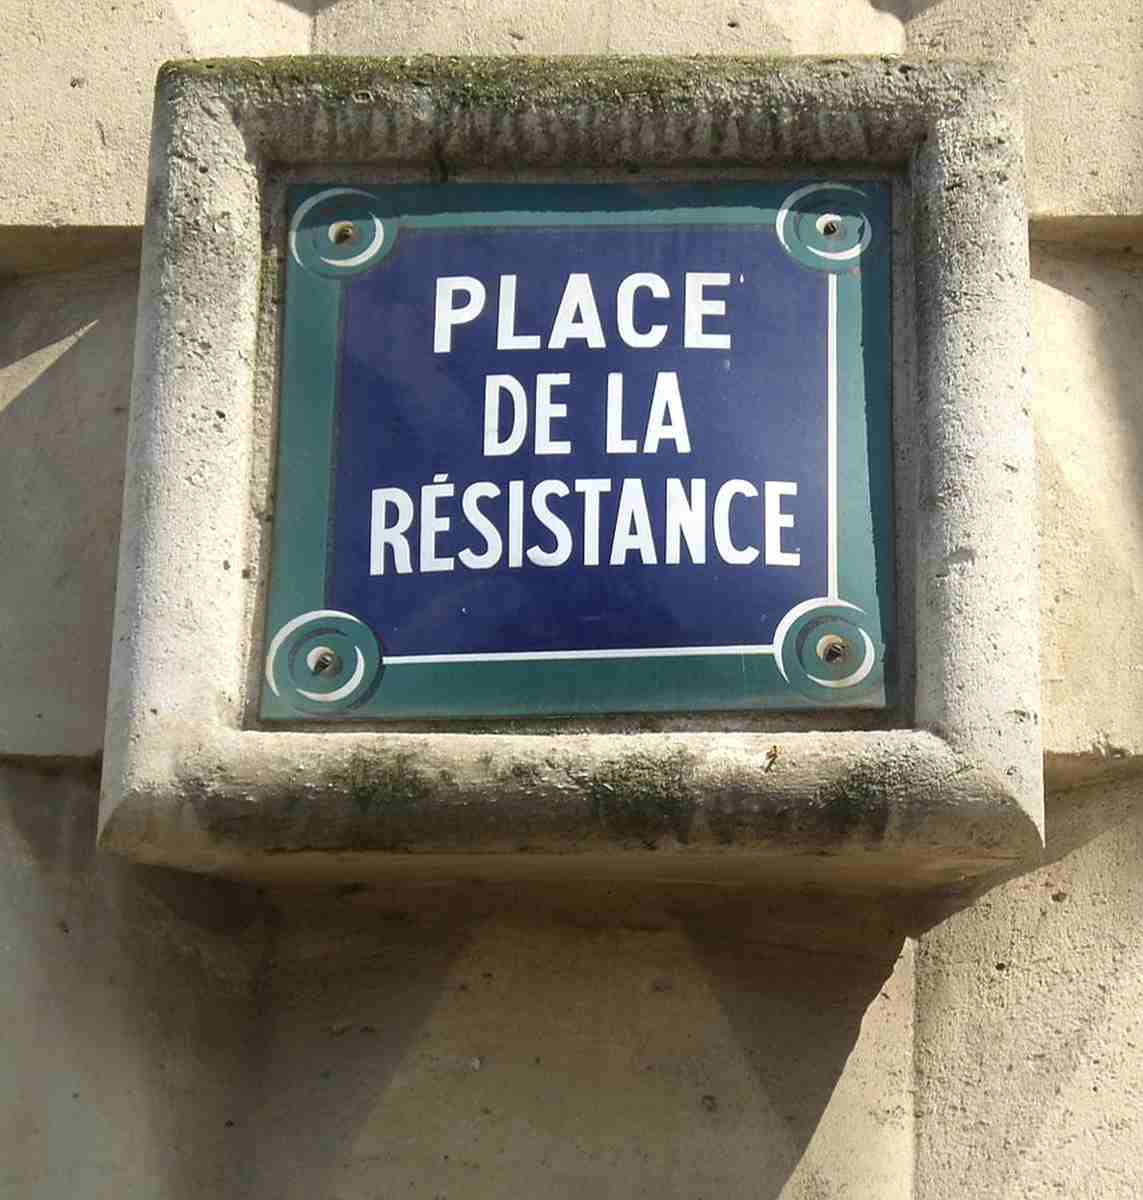 1010 Place de la Resistance Paris 7 - Waffen für die Résistance - Antifaschismus - Theorie & Geschichte